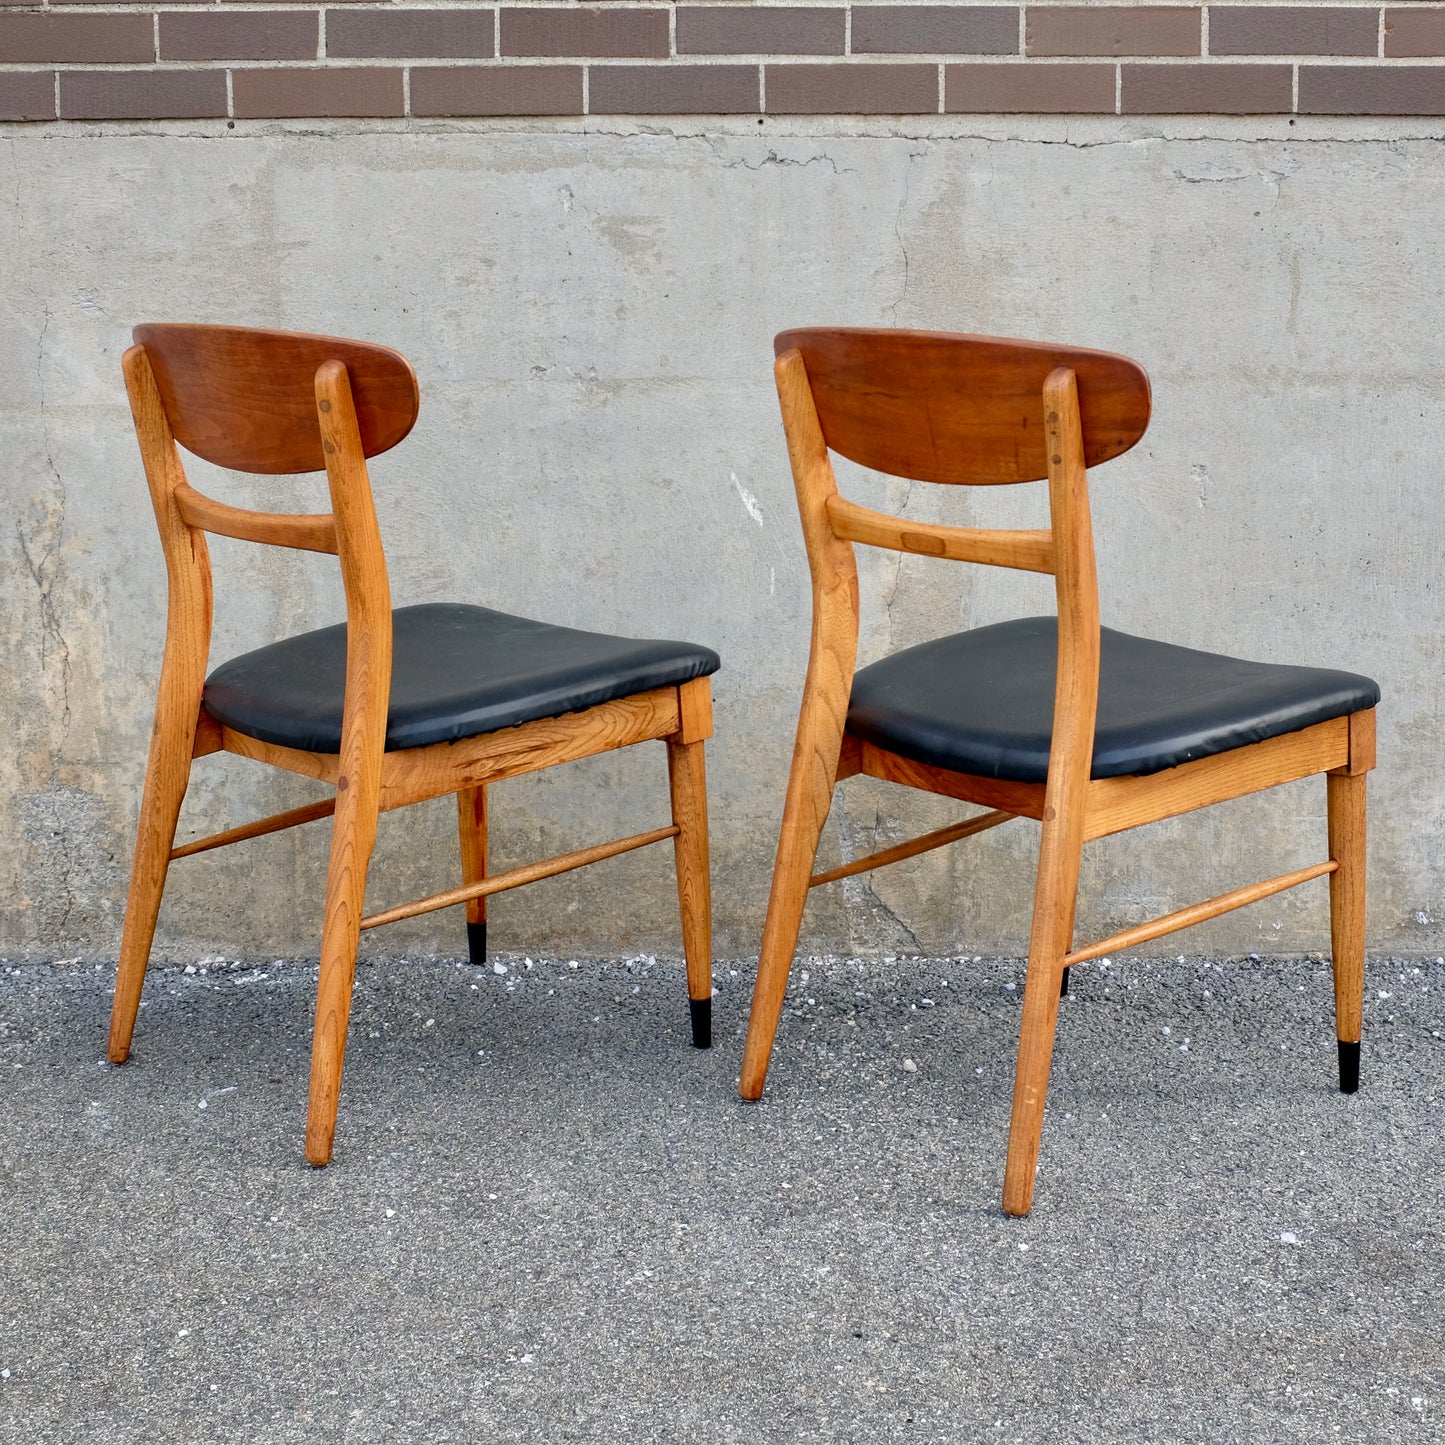 Lane Furniture "Acclaim" Walnut & Ash Dining Chairs - Set of 2